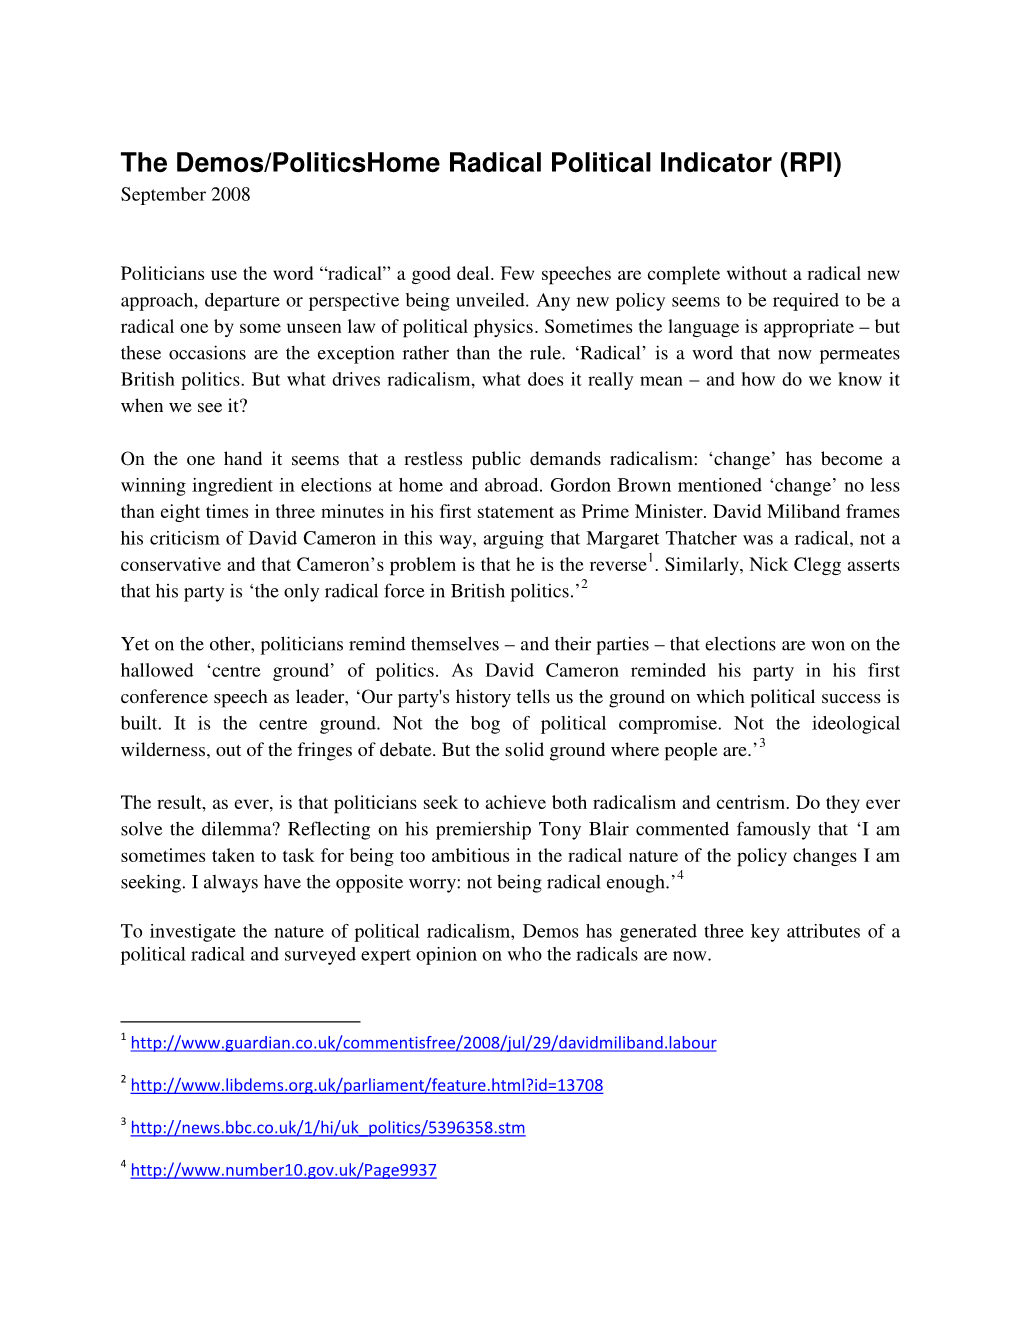 The Demos/Politicshome Radical Political Indicator (RPI) September 2008